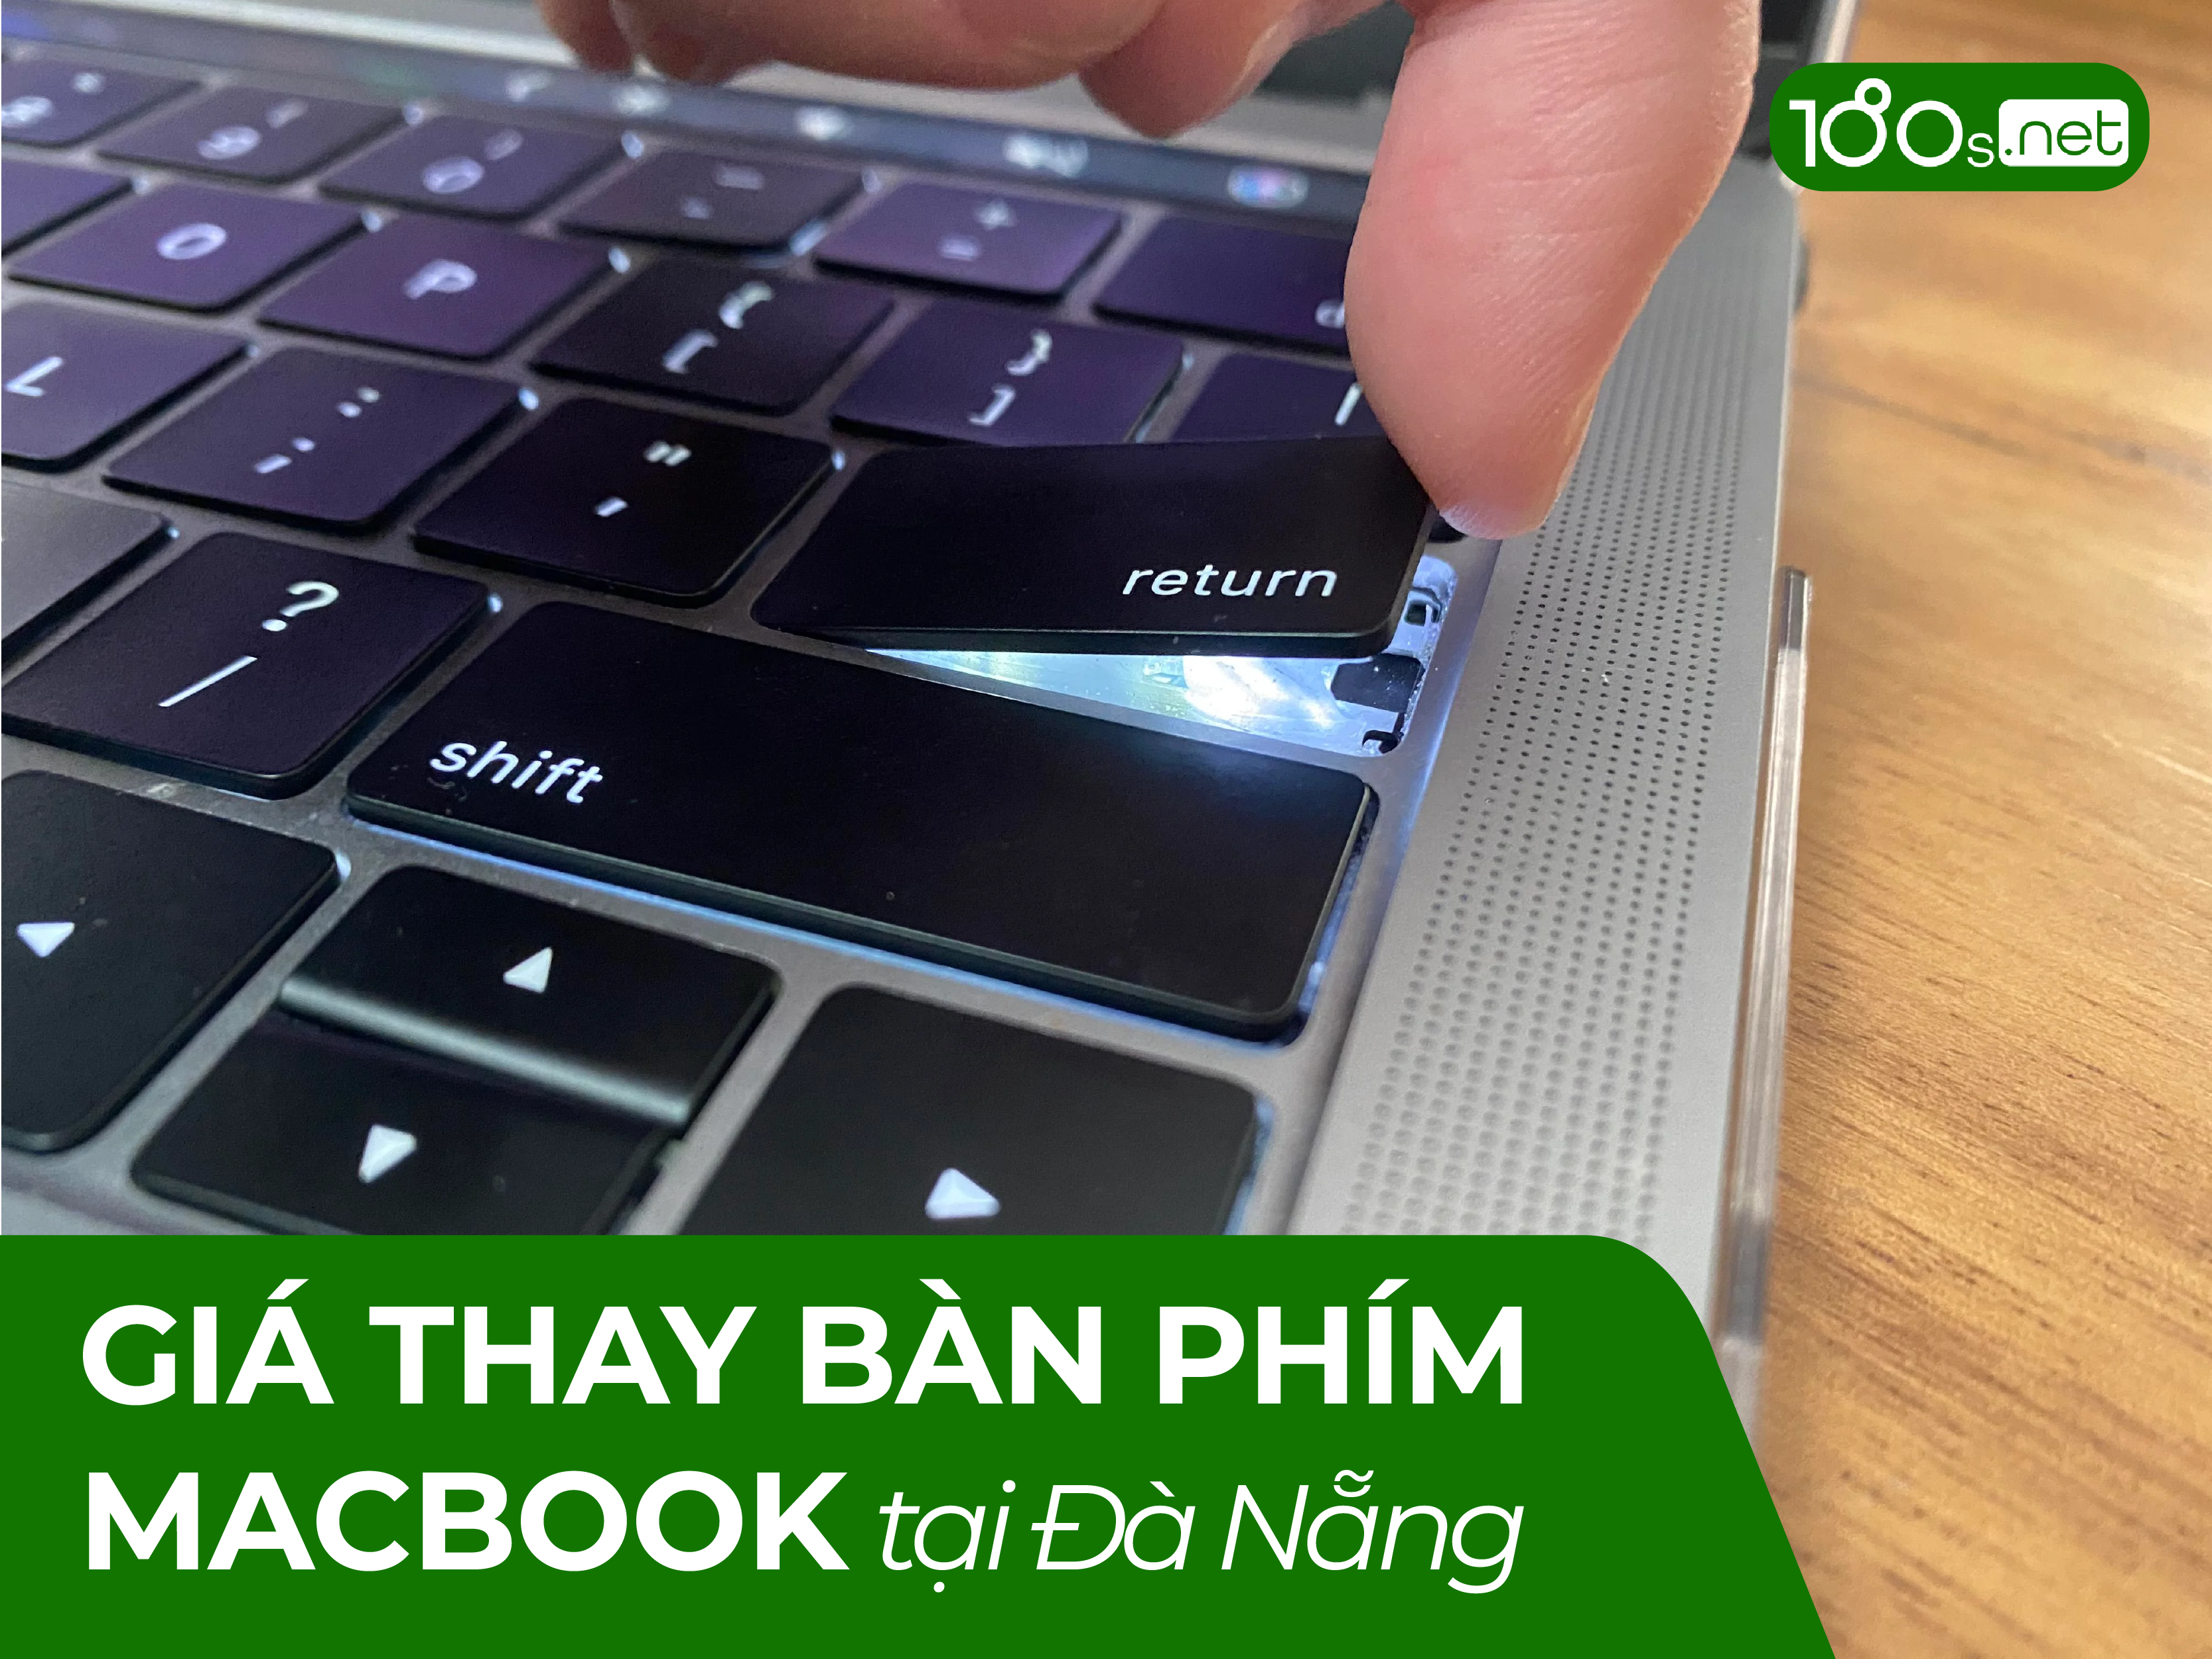 Giá thay bàn phím Macbook tại Đà Nẵng